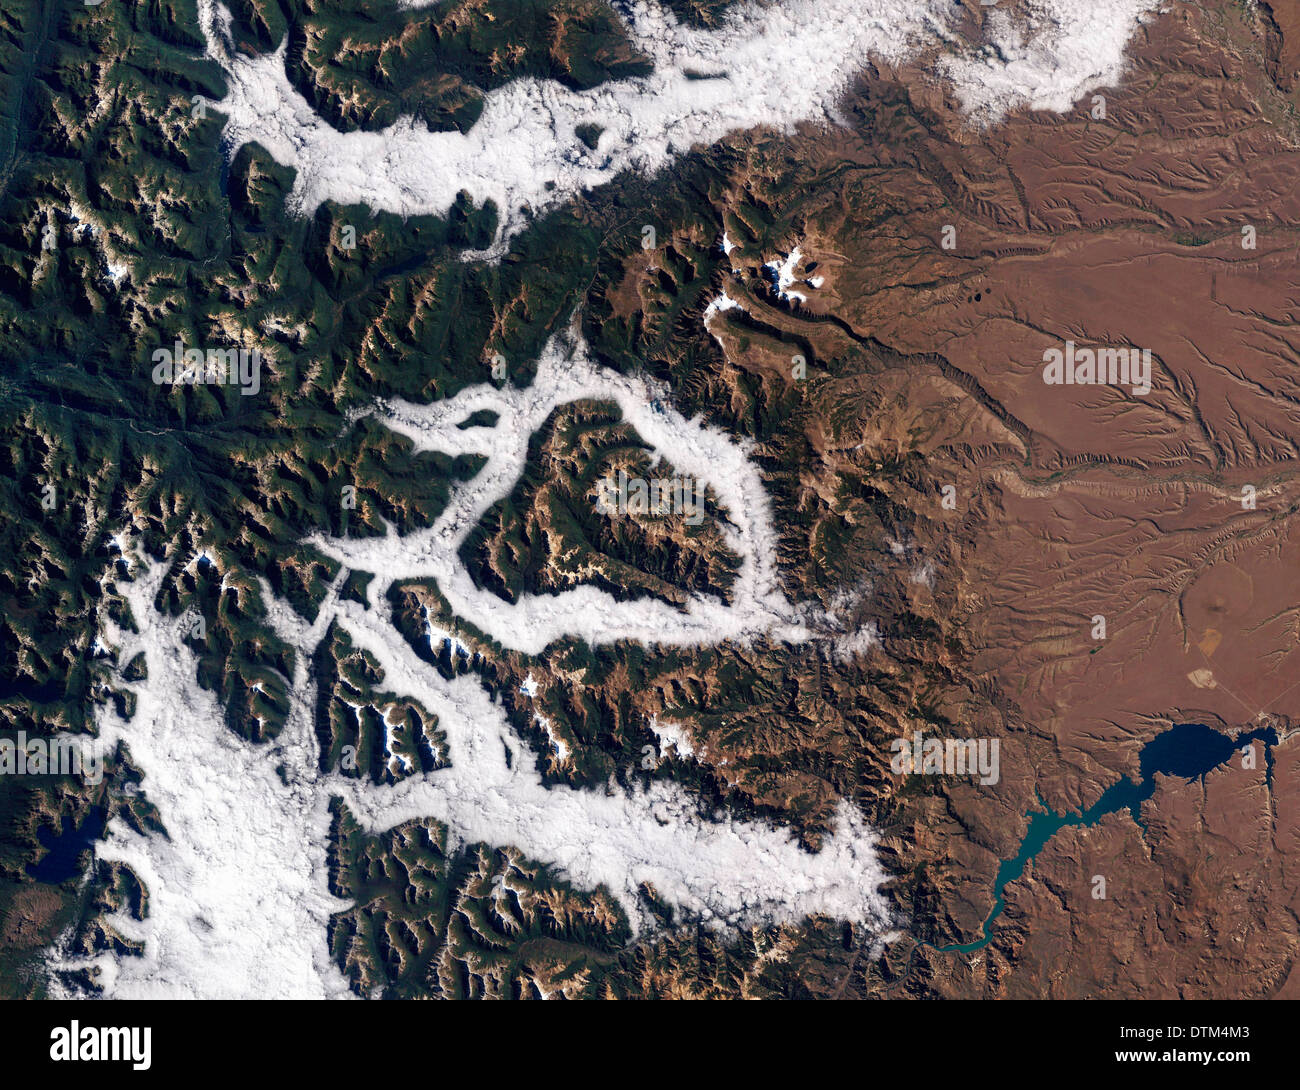 Niebla en Argentina del Distrito del Lago visto desde la NASA's Thematic Mapper en el Landsat 5 satélite Foto de stock